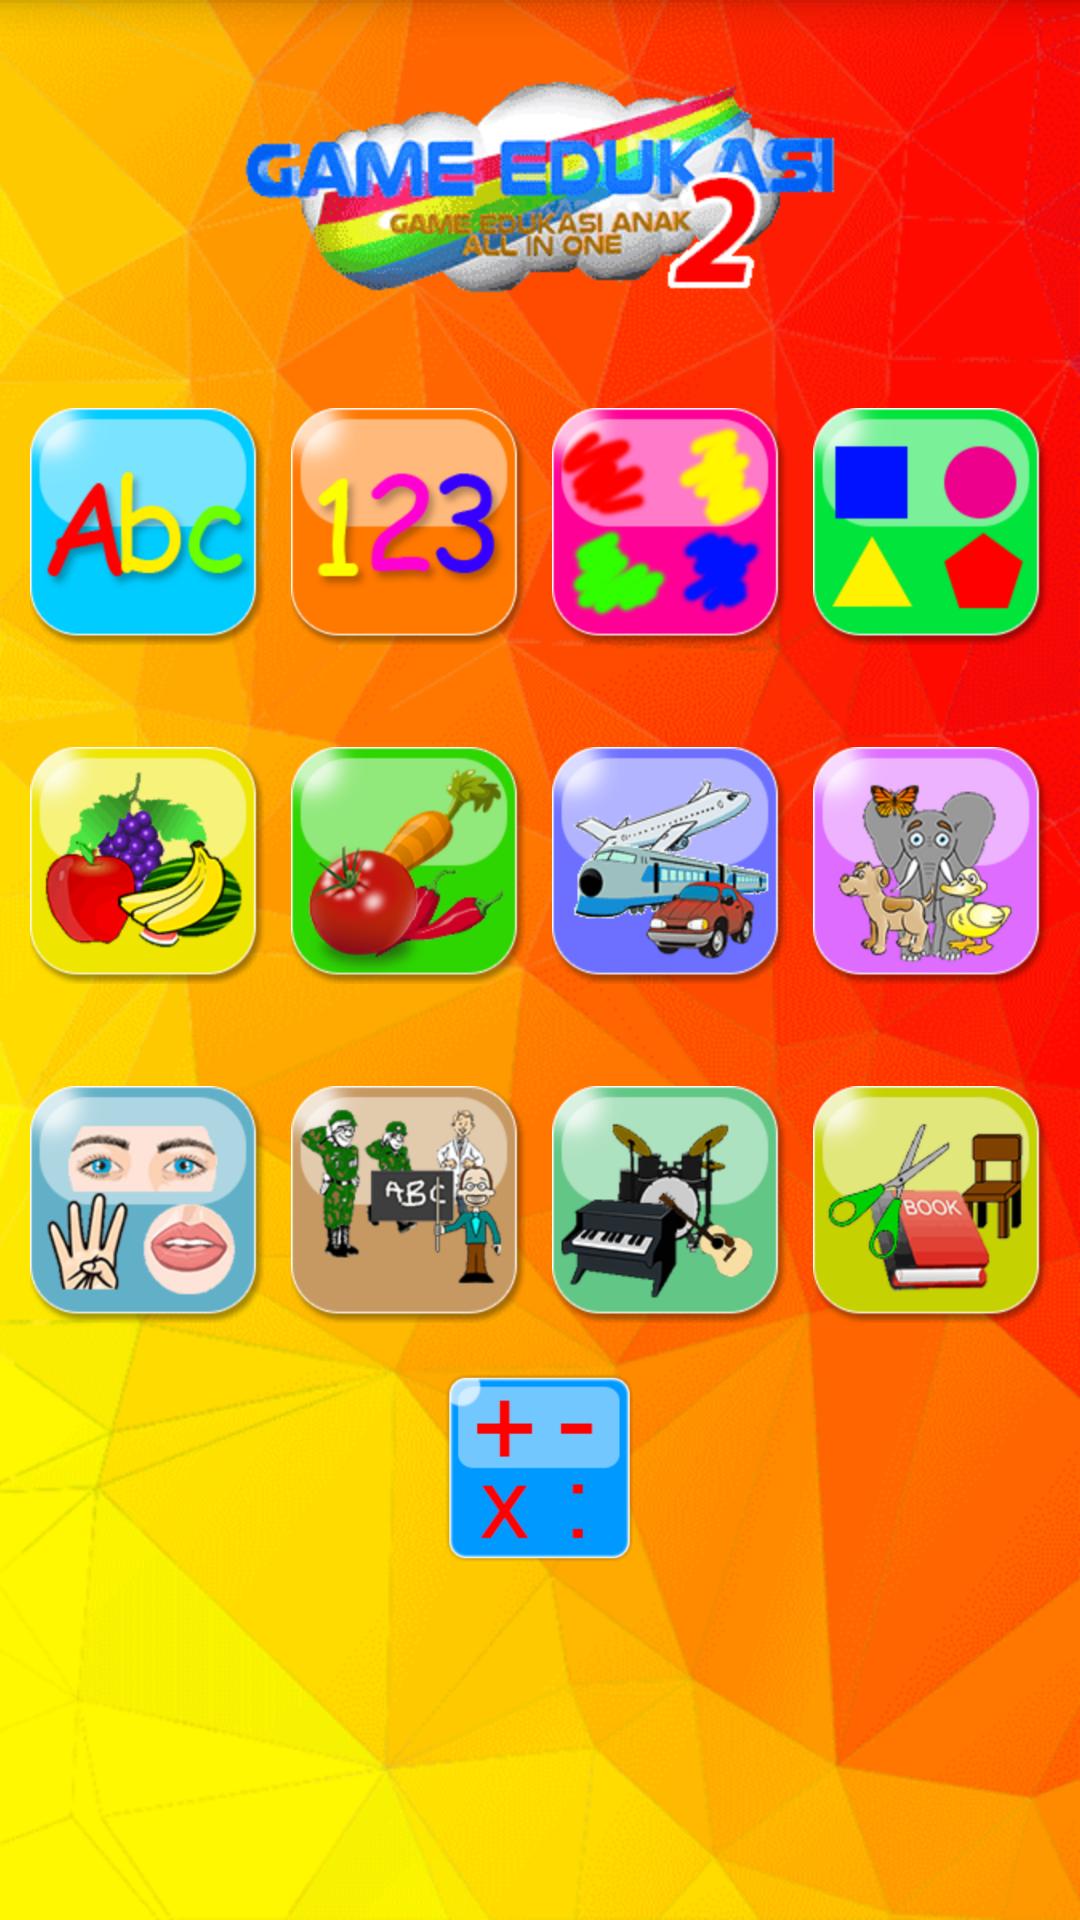 Game Edukasi Anak 2 for Android APK Download